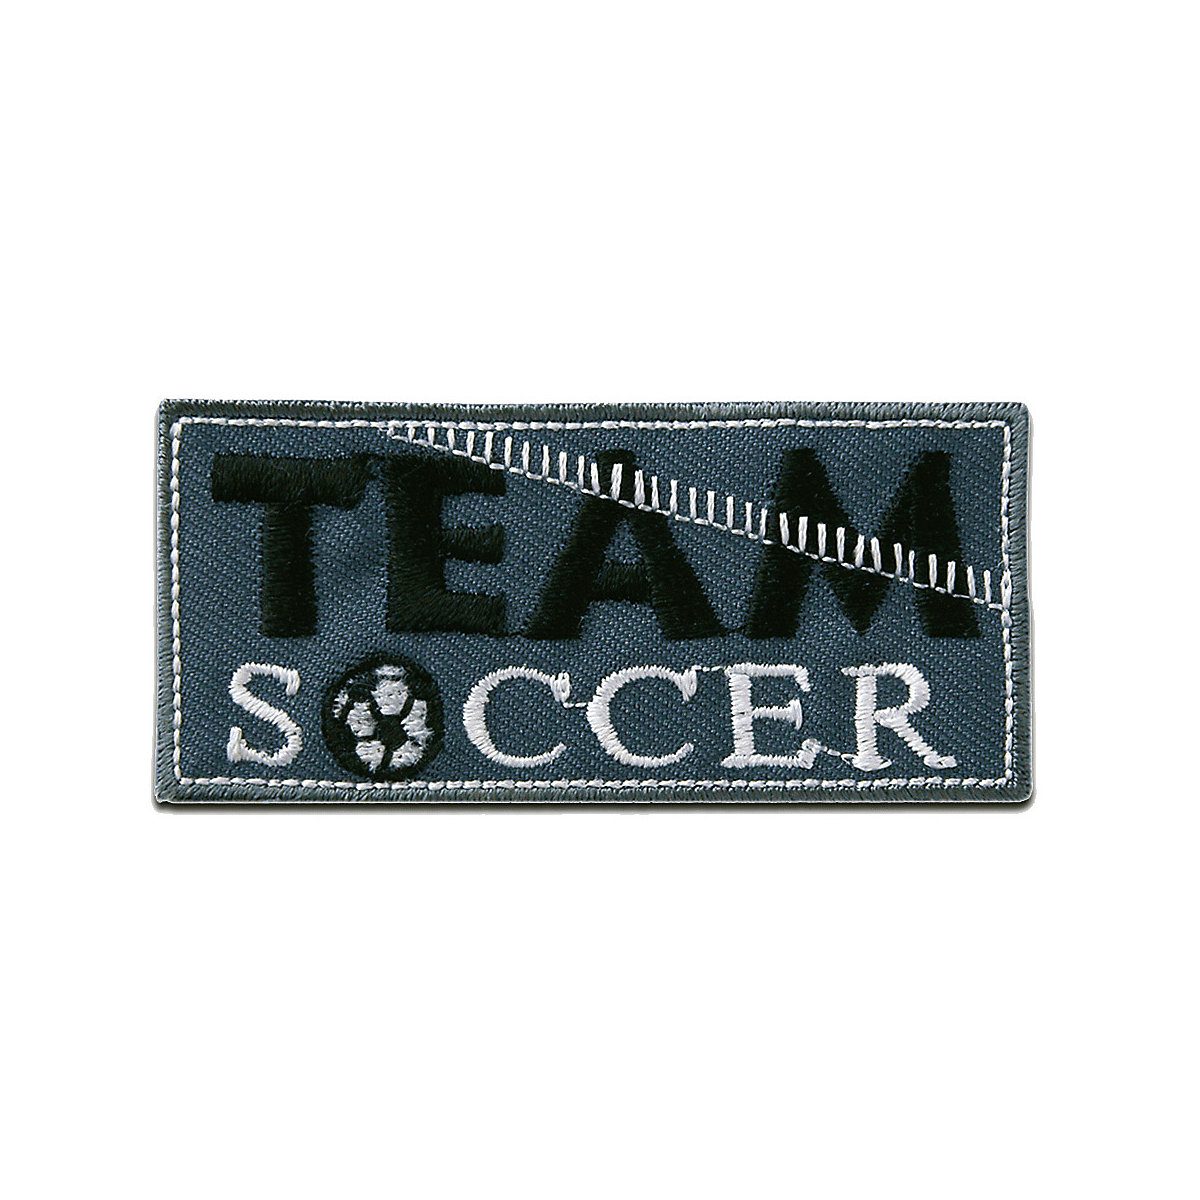 Catch the Patch Aufnäher / Bügelbild Team Soccer Fußball Nähsets für Jungen